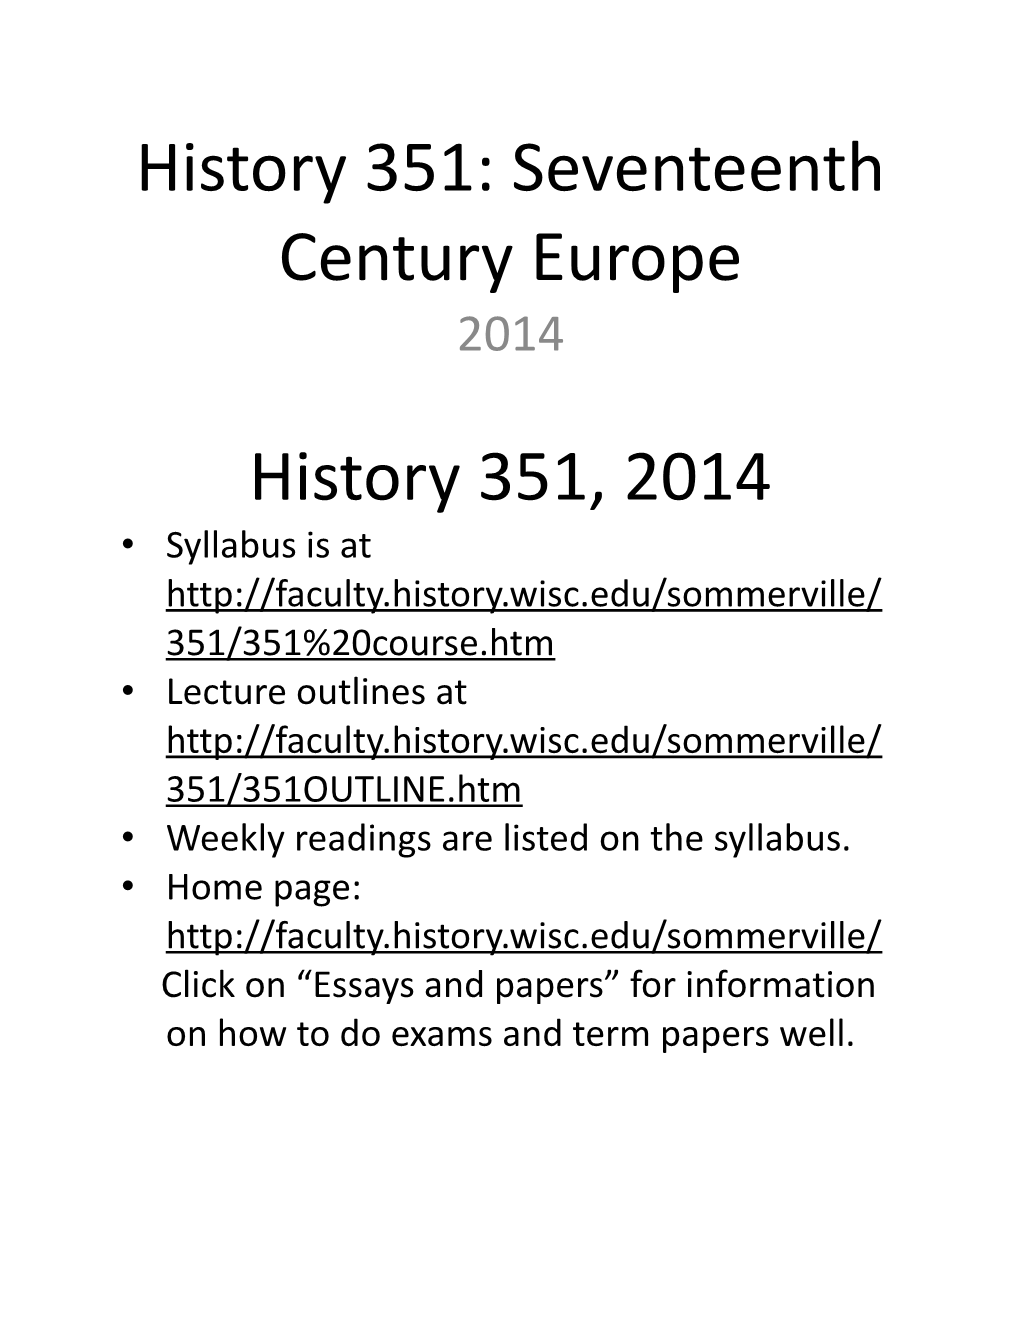 History 351: Seventeenth Century Europe